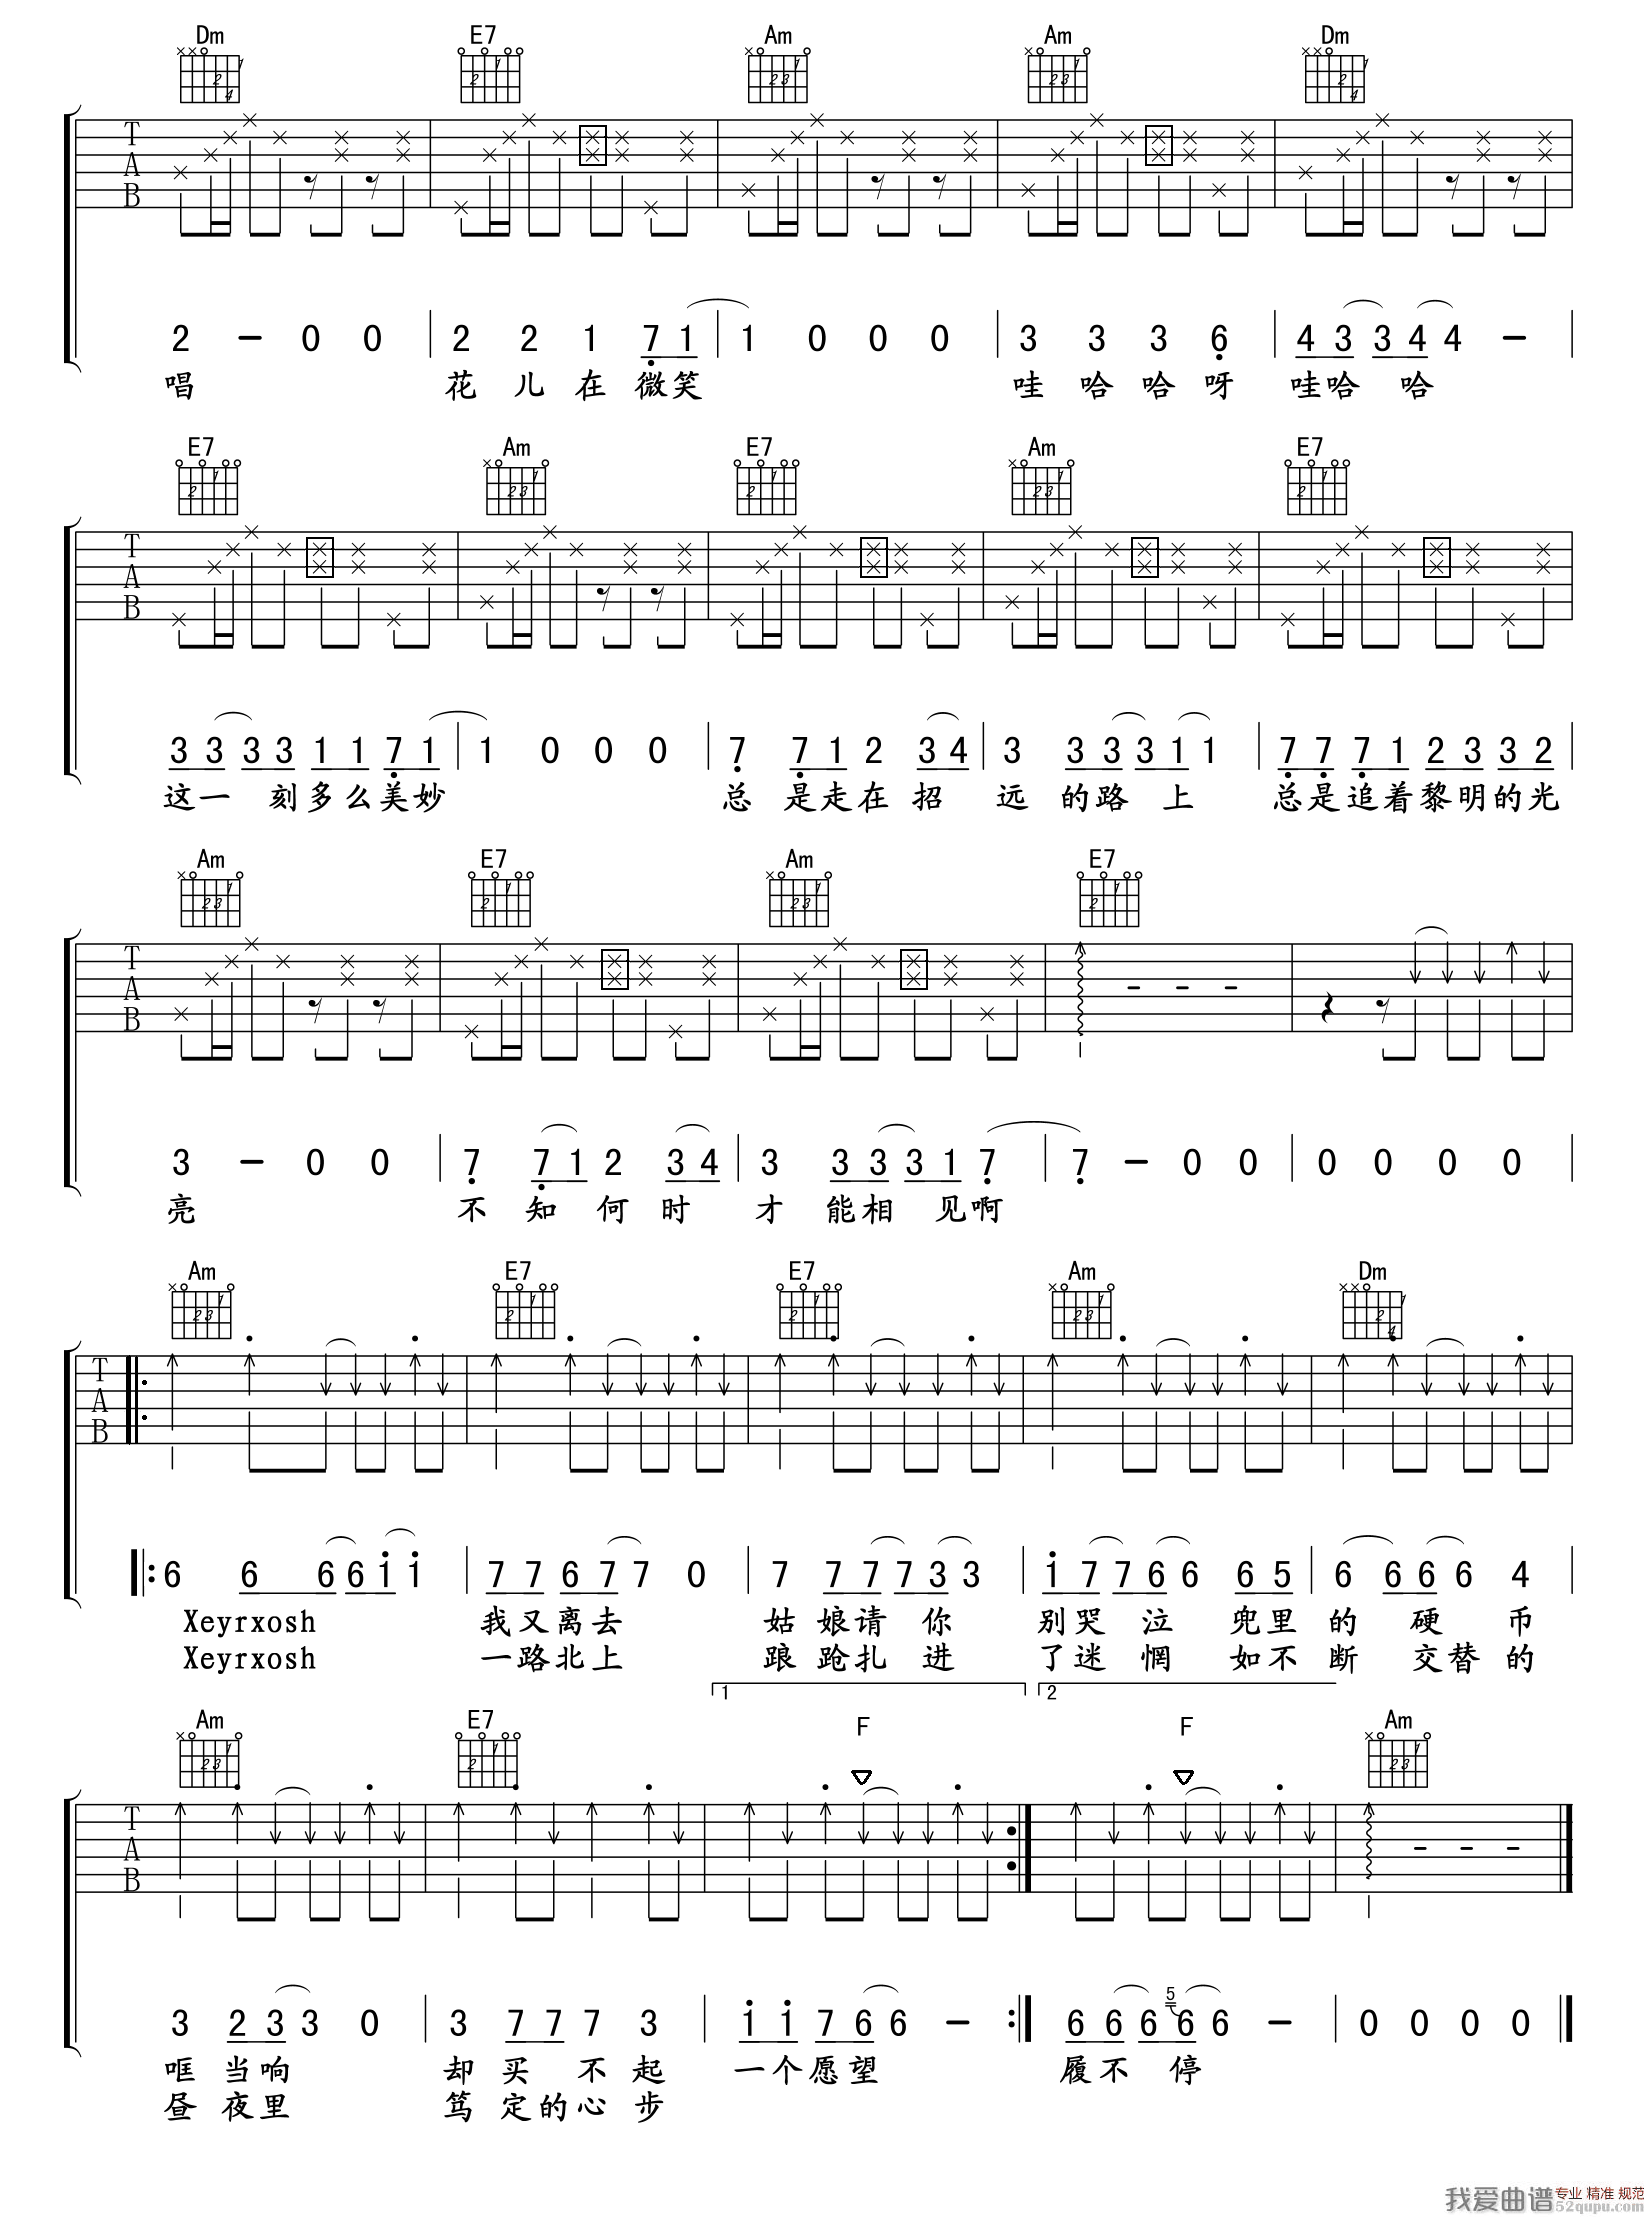 尚宇翔《xeyrxosh》吉他谱E调六线谱(图)1